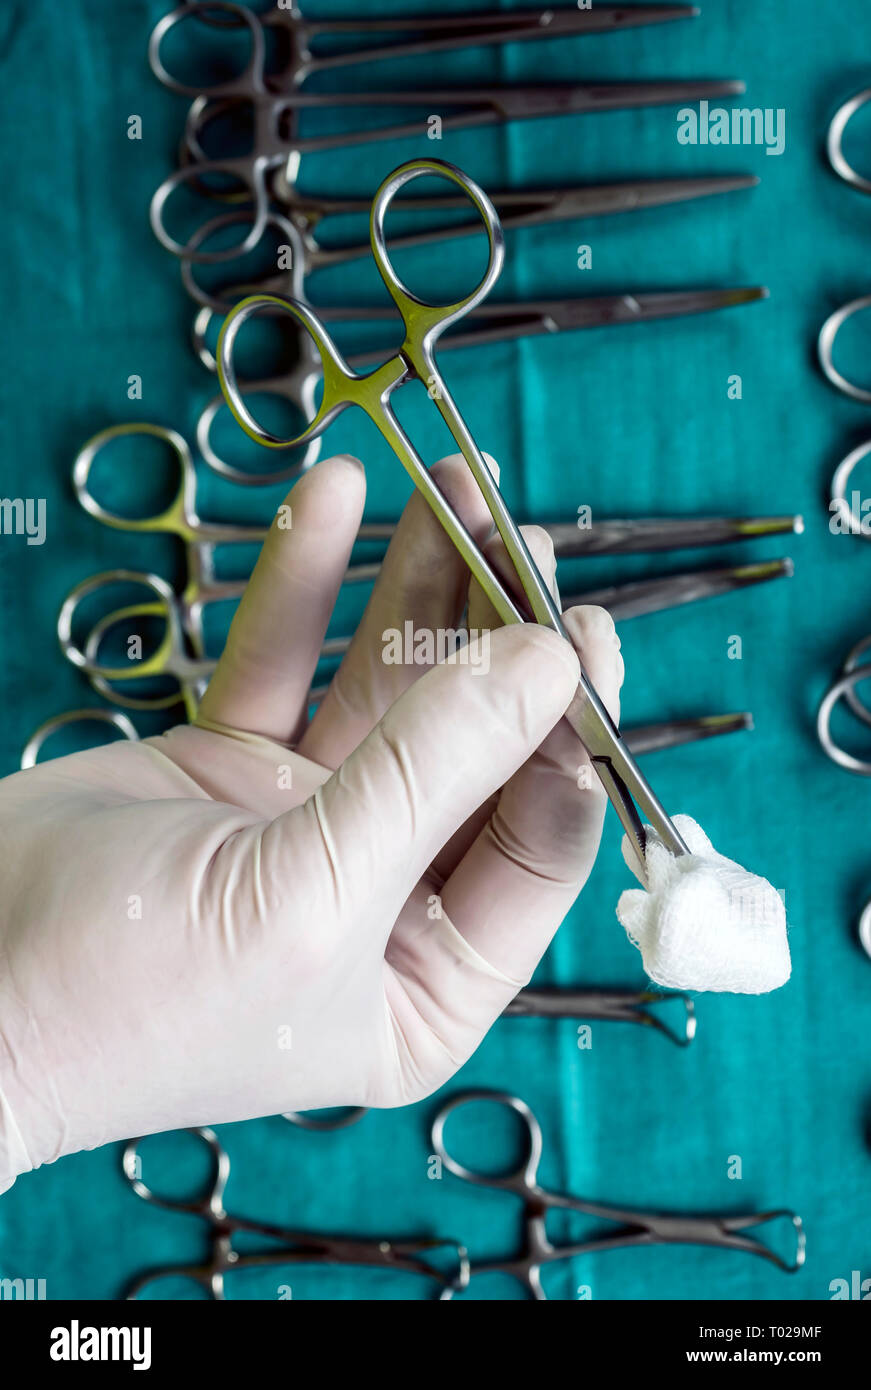 Chirurg im Operationssaal arbeiten, die Hände mit Handschuhen holding Schere mit torunda, konzeptionelle Bild, vertikale Zusammensetzung Stockfoto